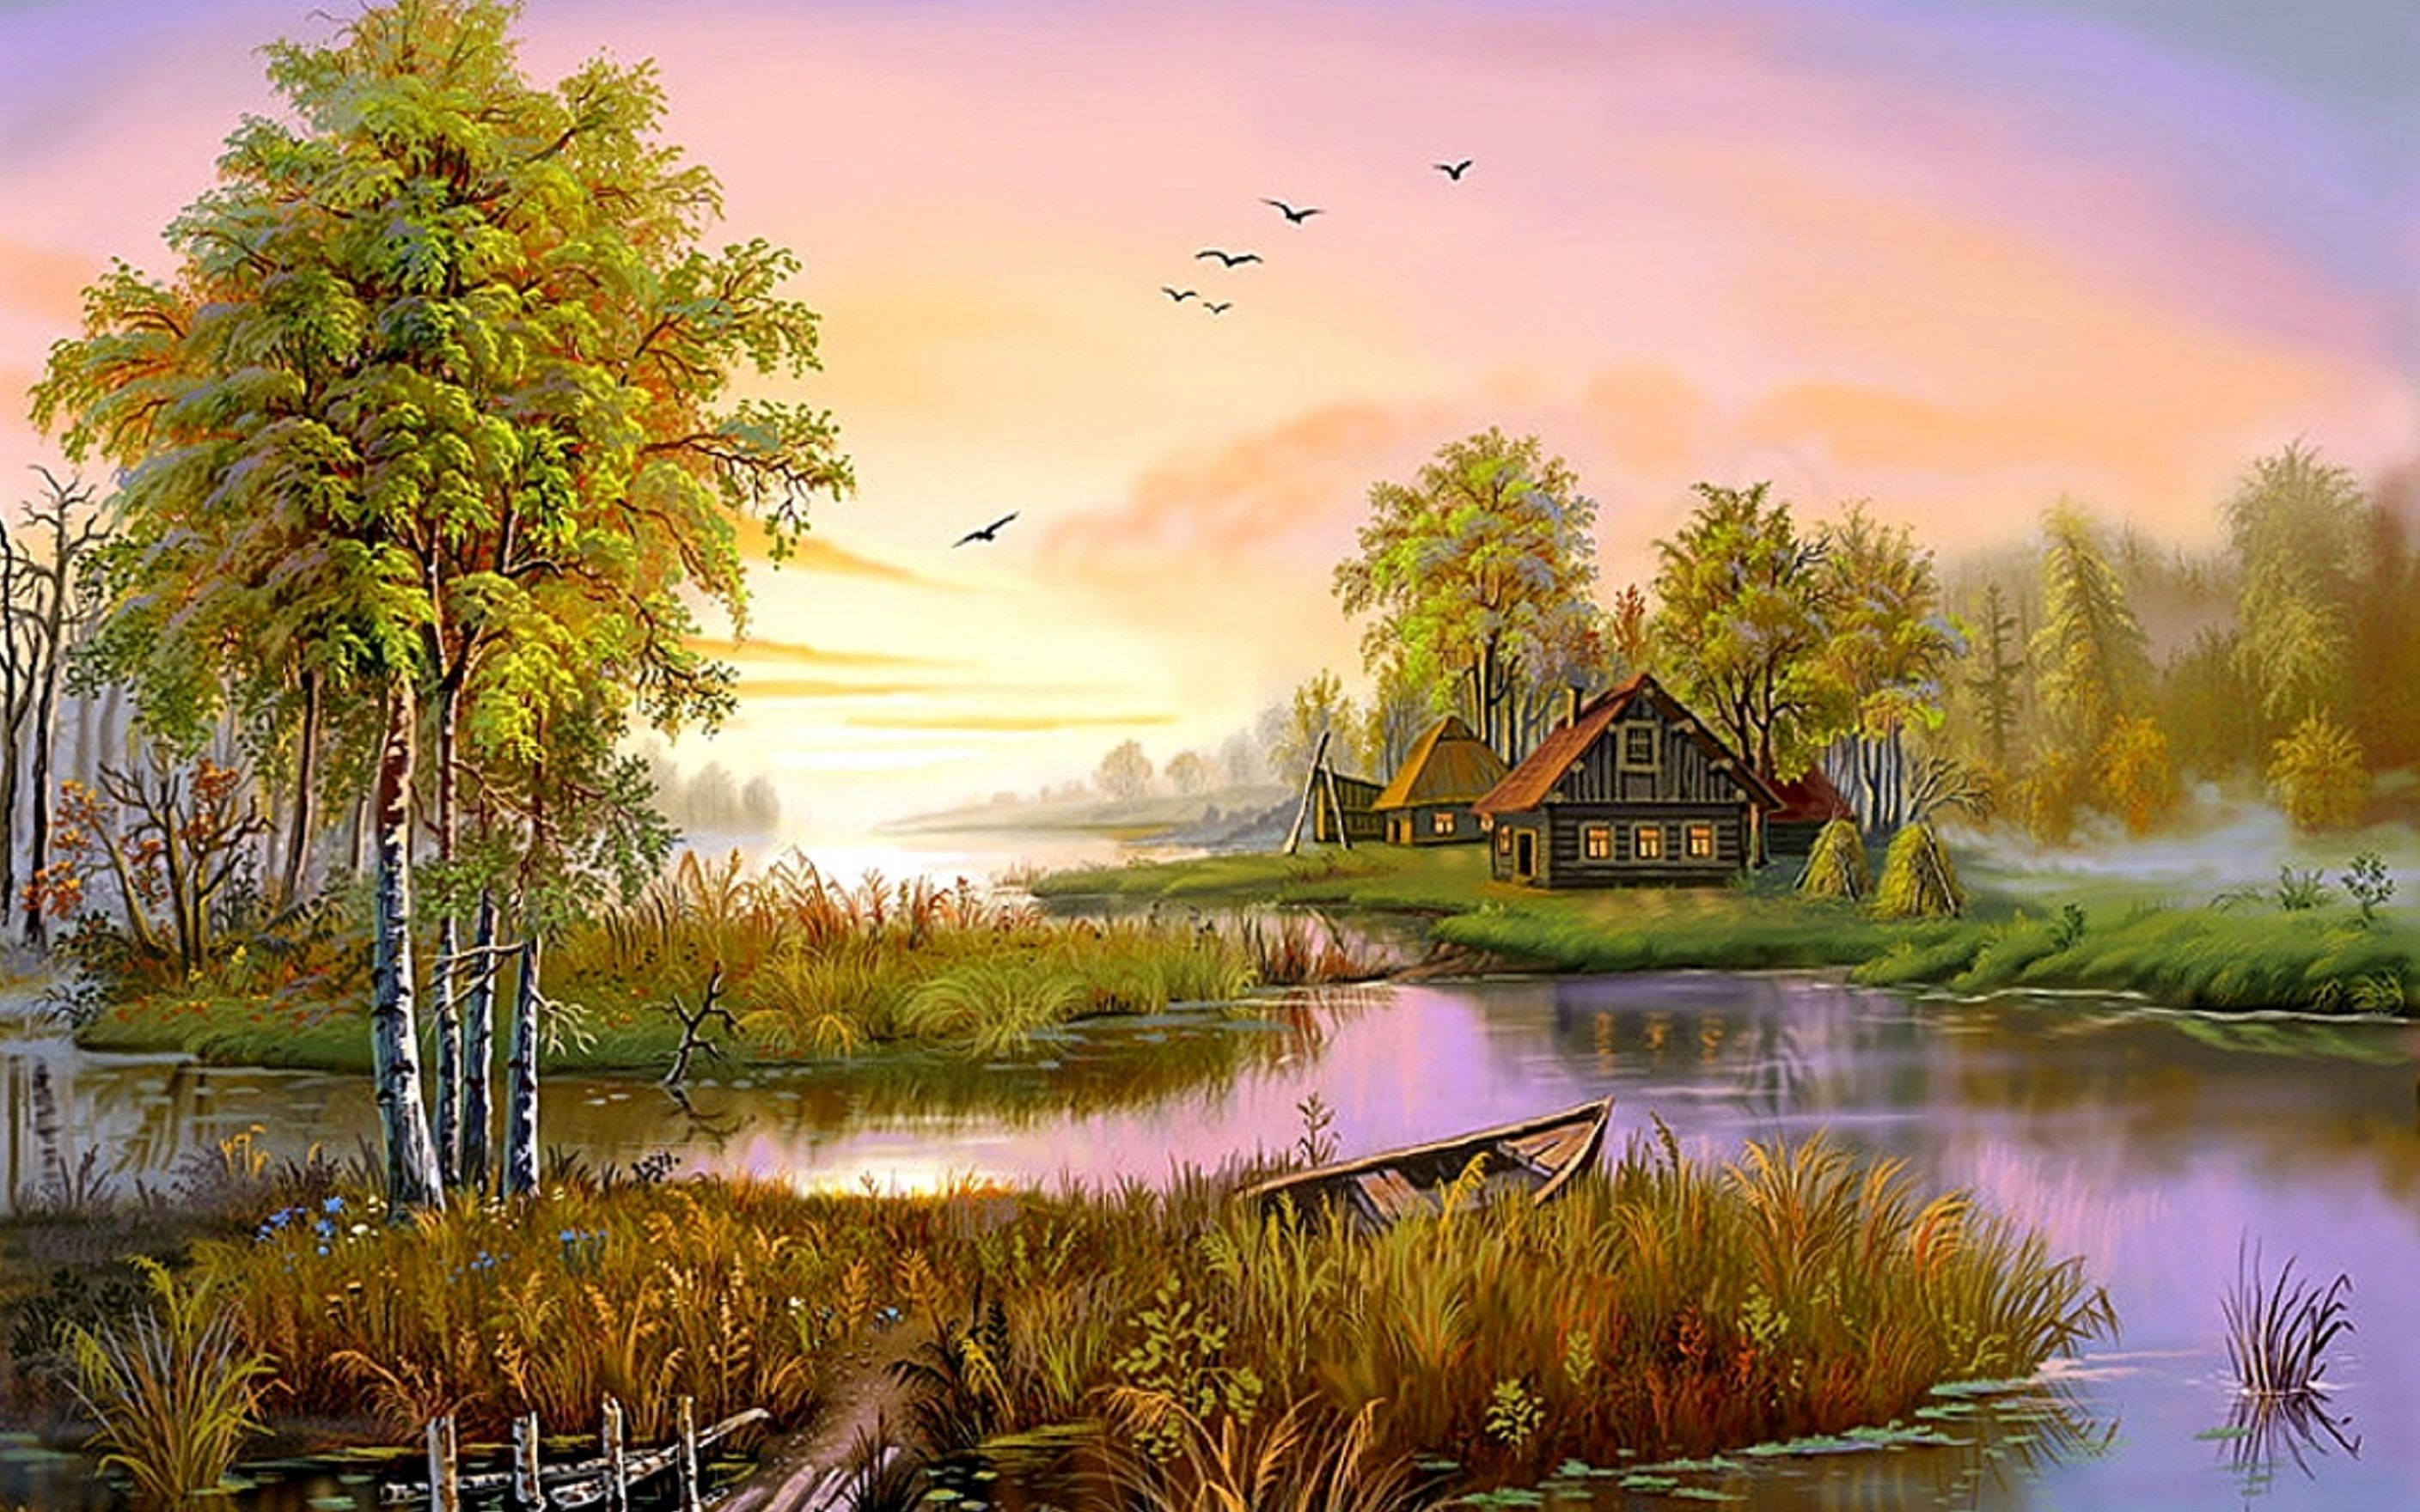 natural images hd wallpaper desktop background,natural landscape,nature,painting,sky,morning